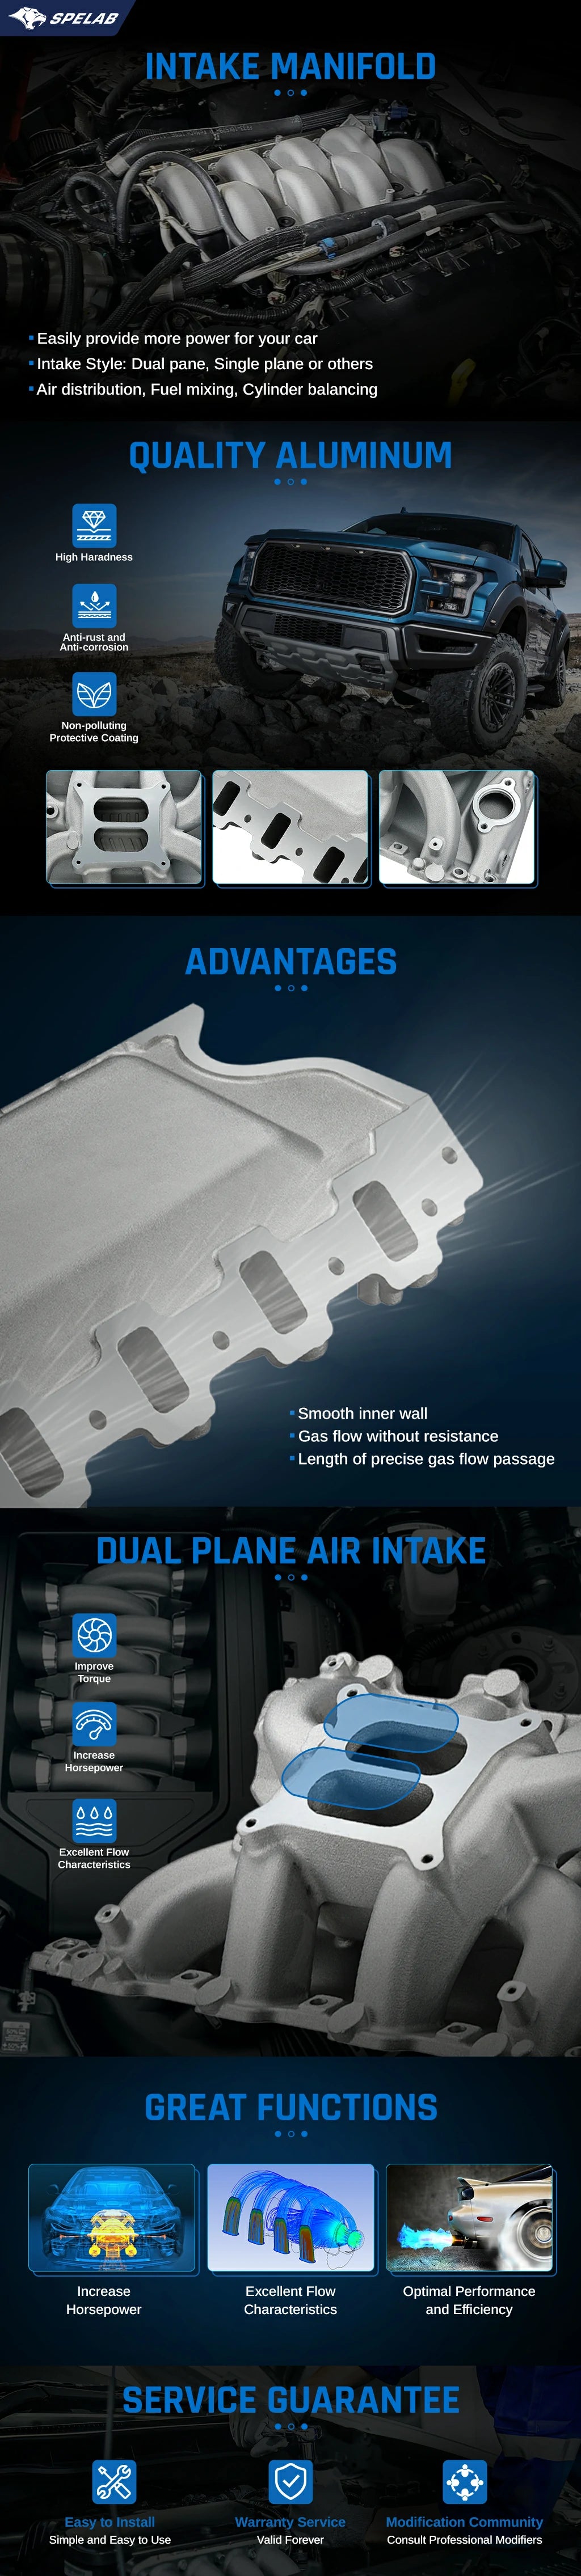 Intake Manifold Mopar Small Block V8 Crosswind Dual Plane| SPELAB-96